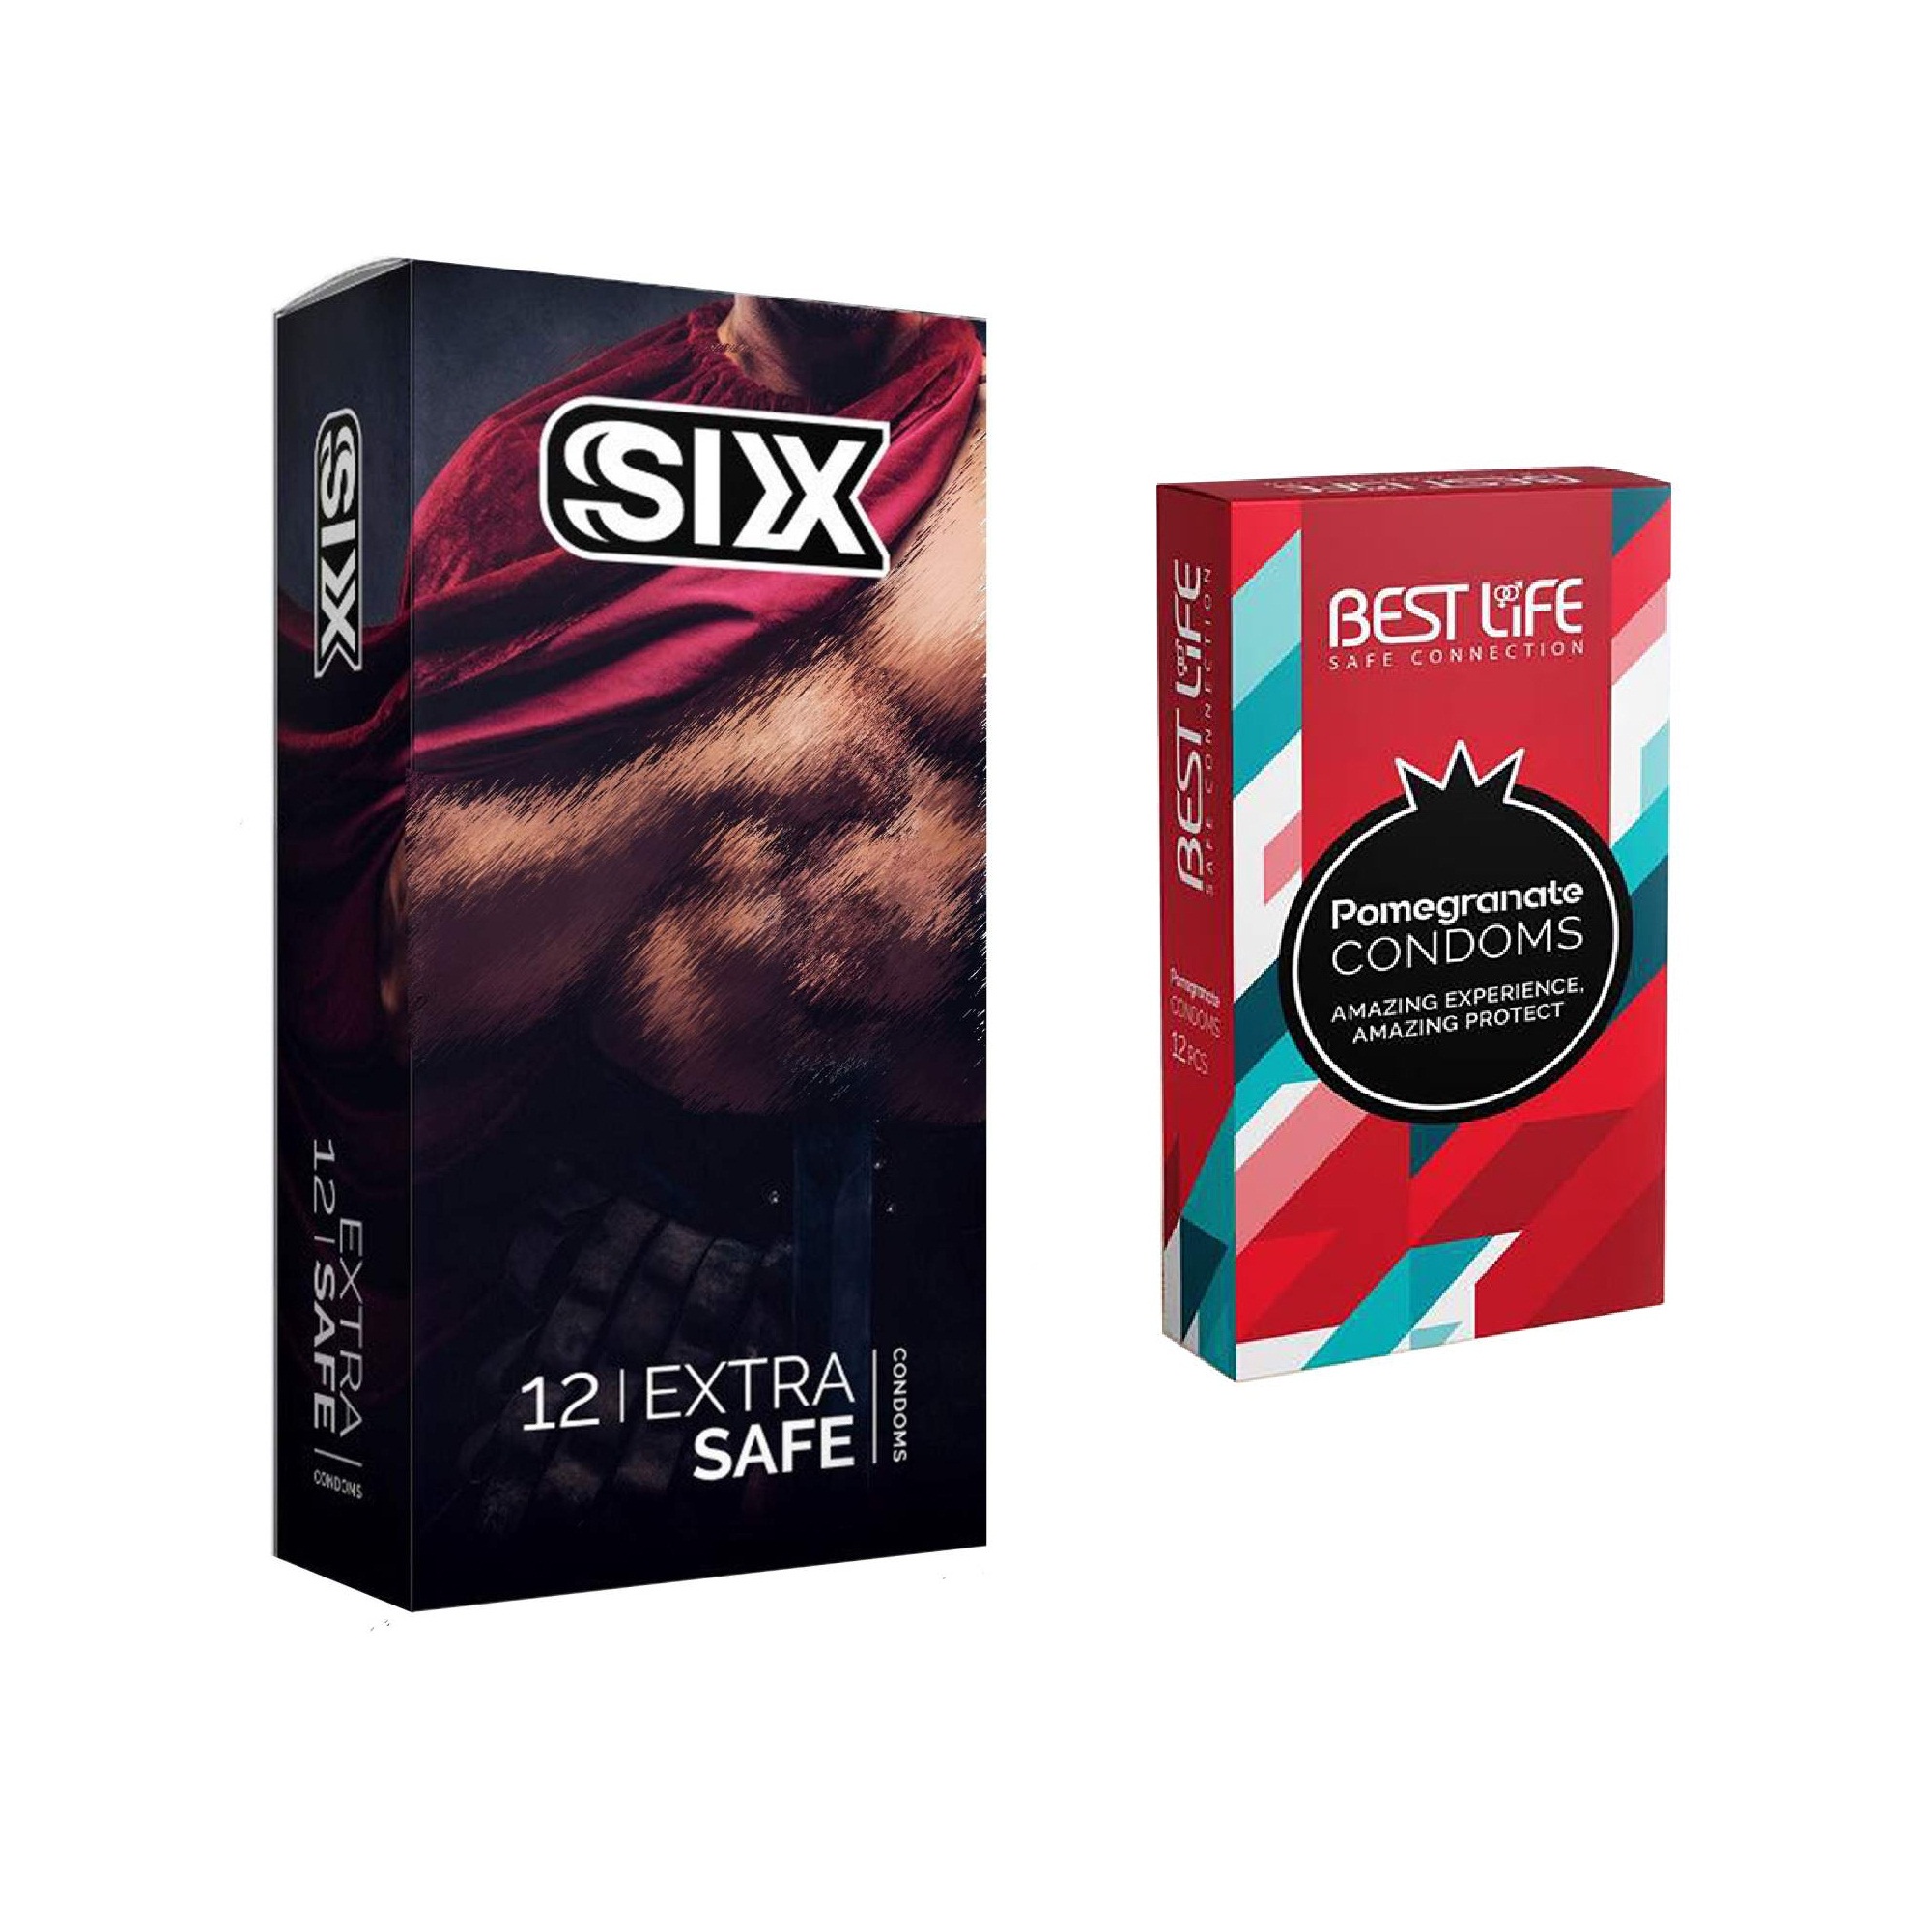 کاندوم سیکس مدل Max Safety بسته 12 عددی به همراه کاندوم بست لایف مدل Pomegranate بسته 12 عددی